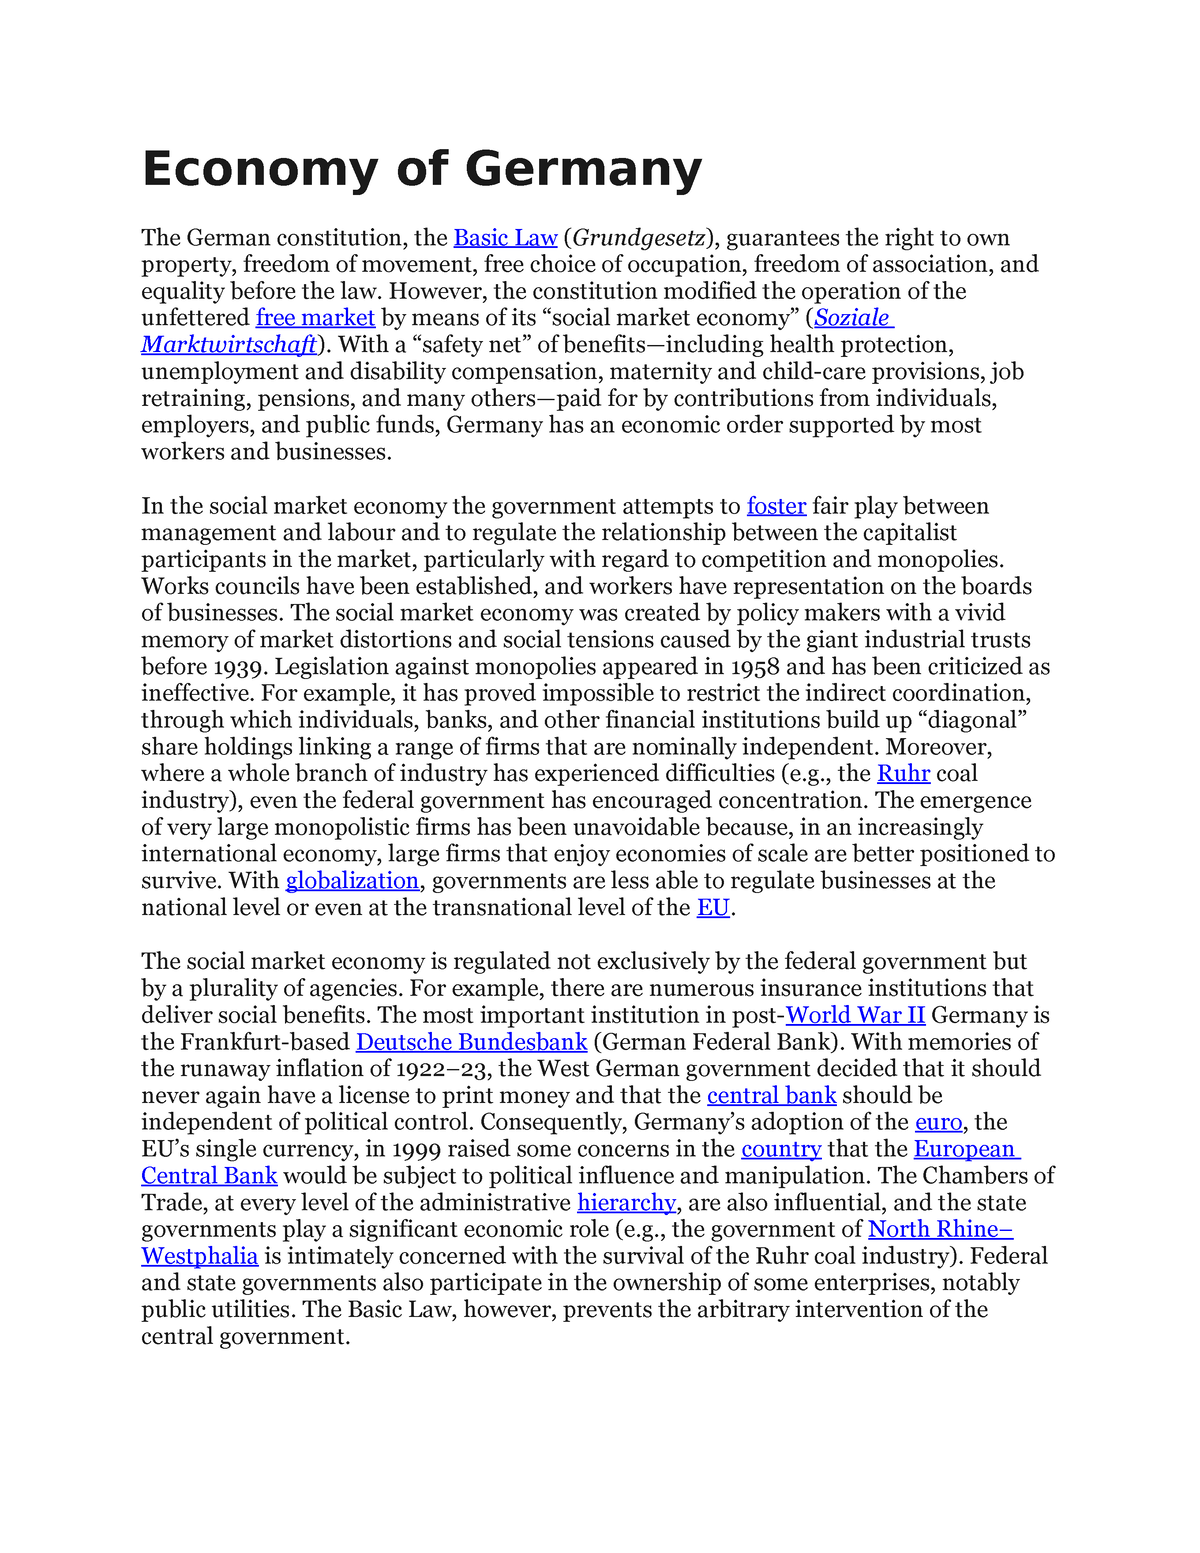 essay on economy of germany